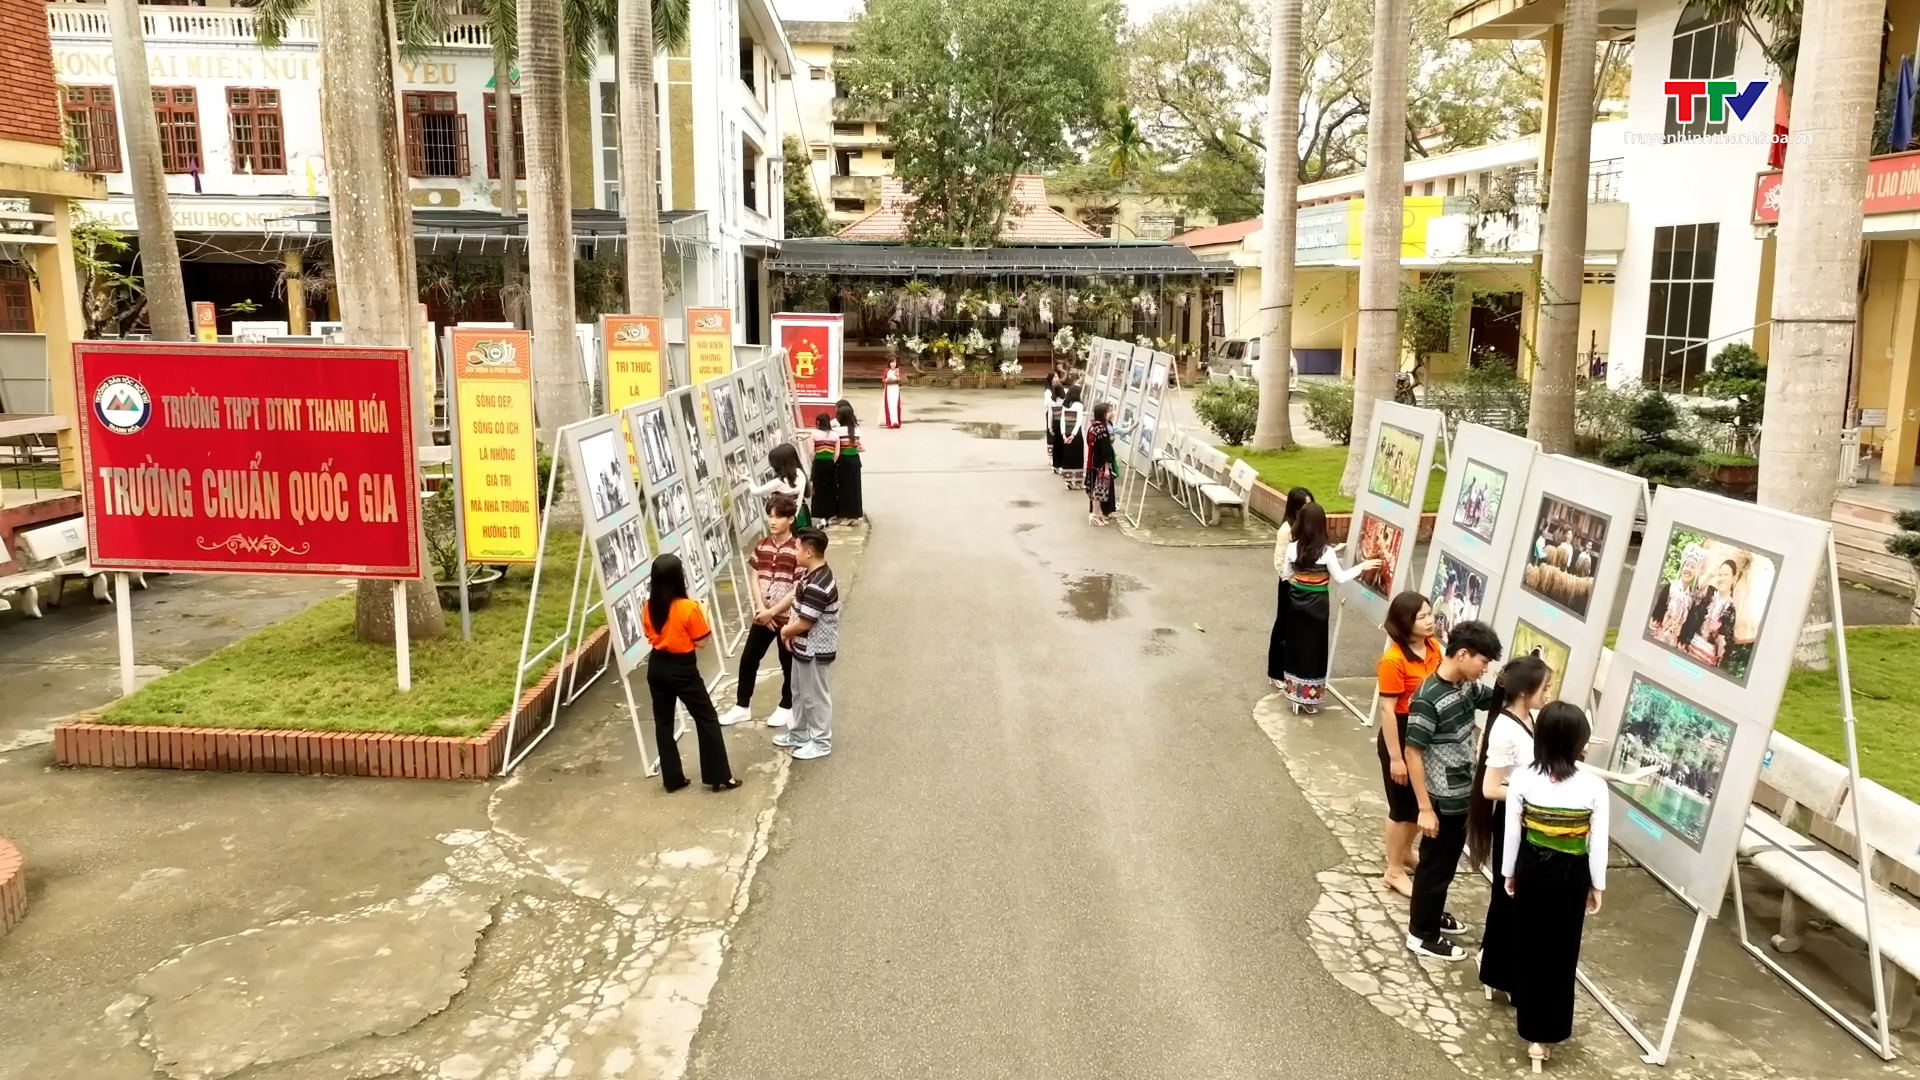 Trung tâm Triển lãm – Hội chợ - Quảng cáo Thanh Hoá: 50 năm - những dấu ấn xây dựng và phát triển - Ảnh 15.